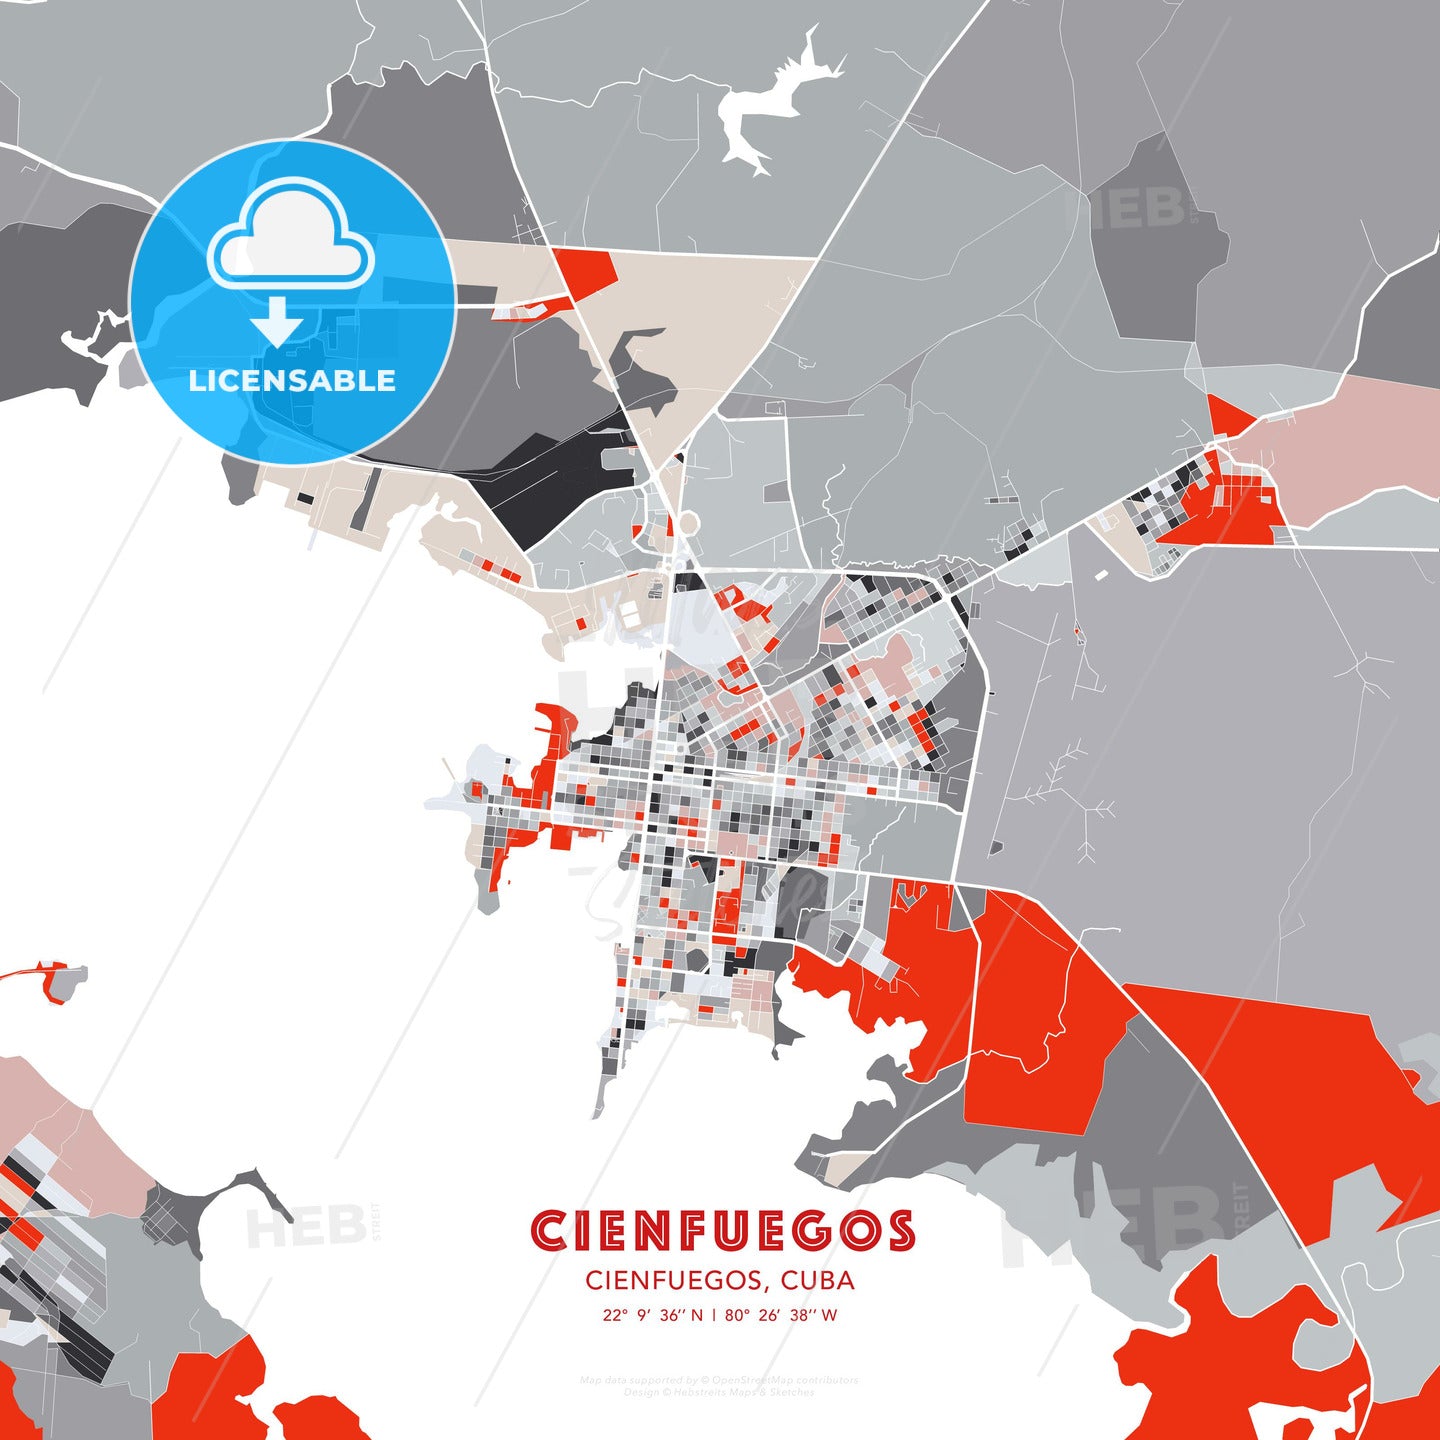 Cienfuegos, Cienfuegos, Cuba, modern map - HEBSTREITS Sketches